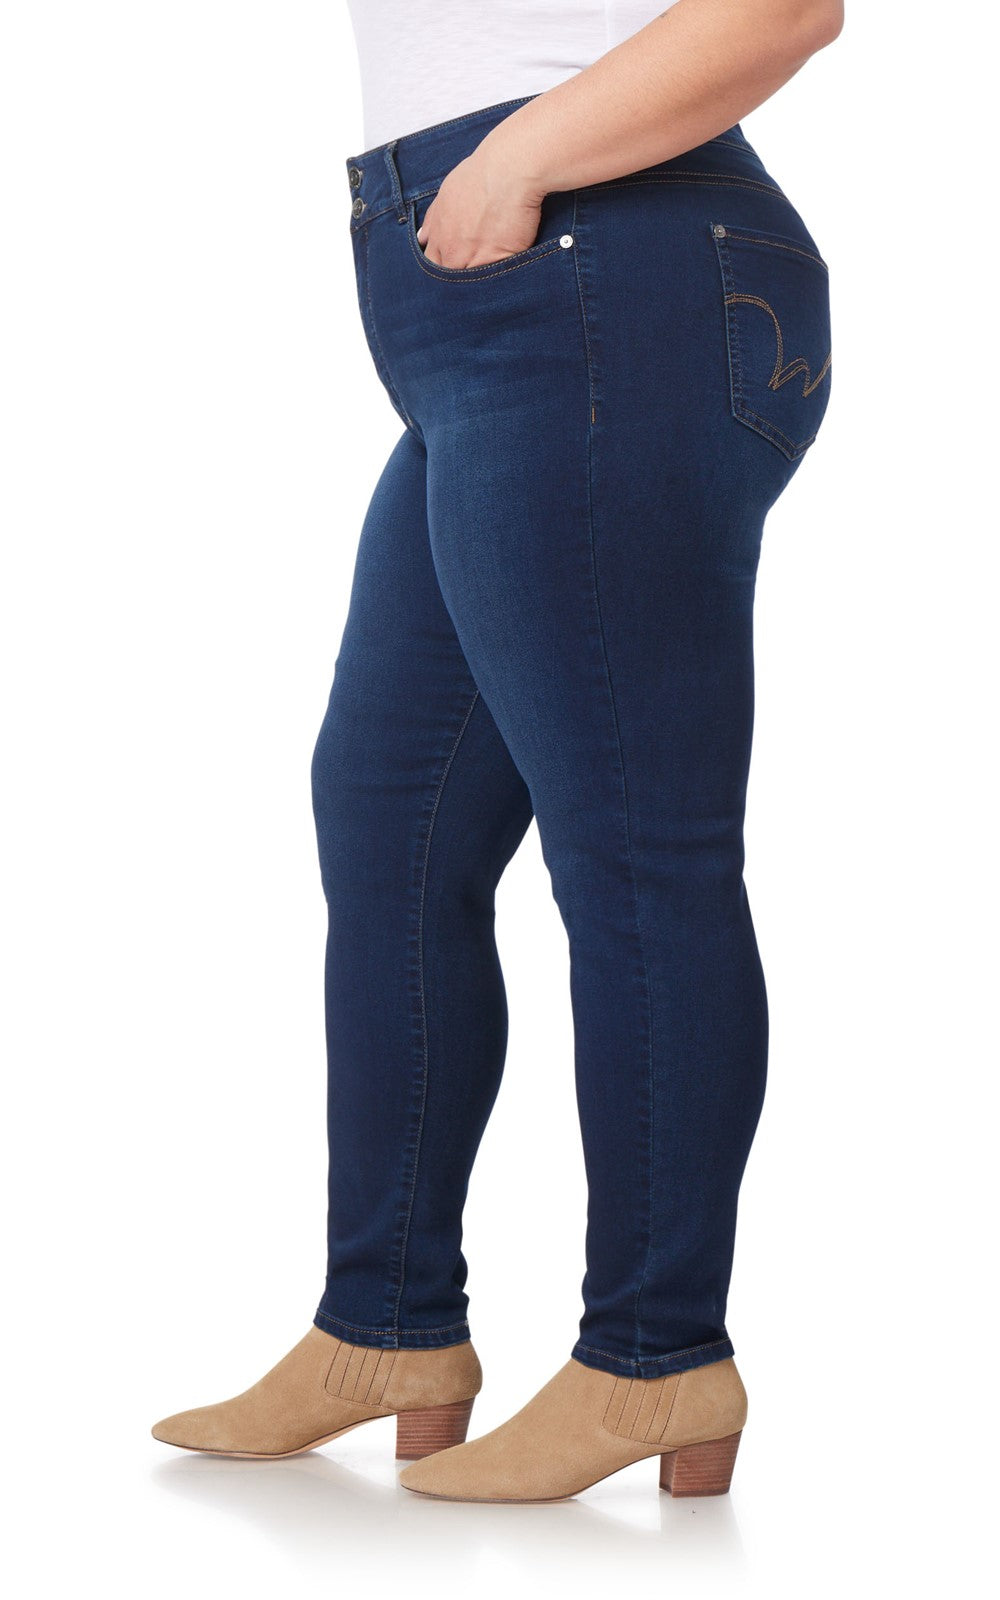 Levi's Plus Size Shaping Capri Jeans - Macy's